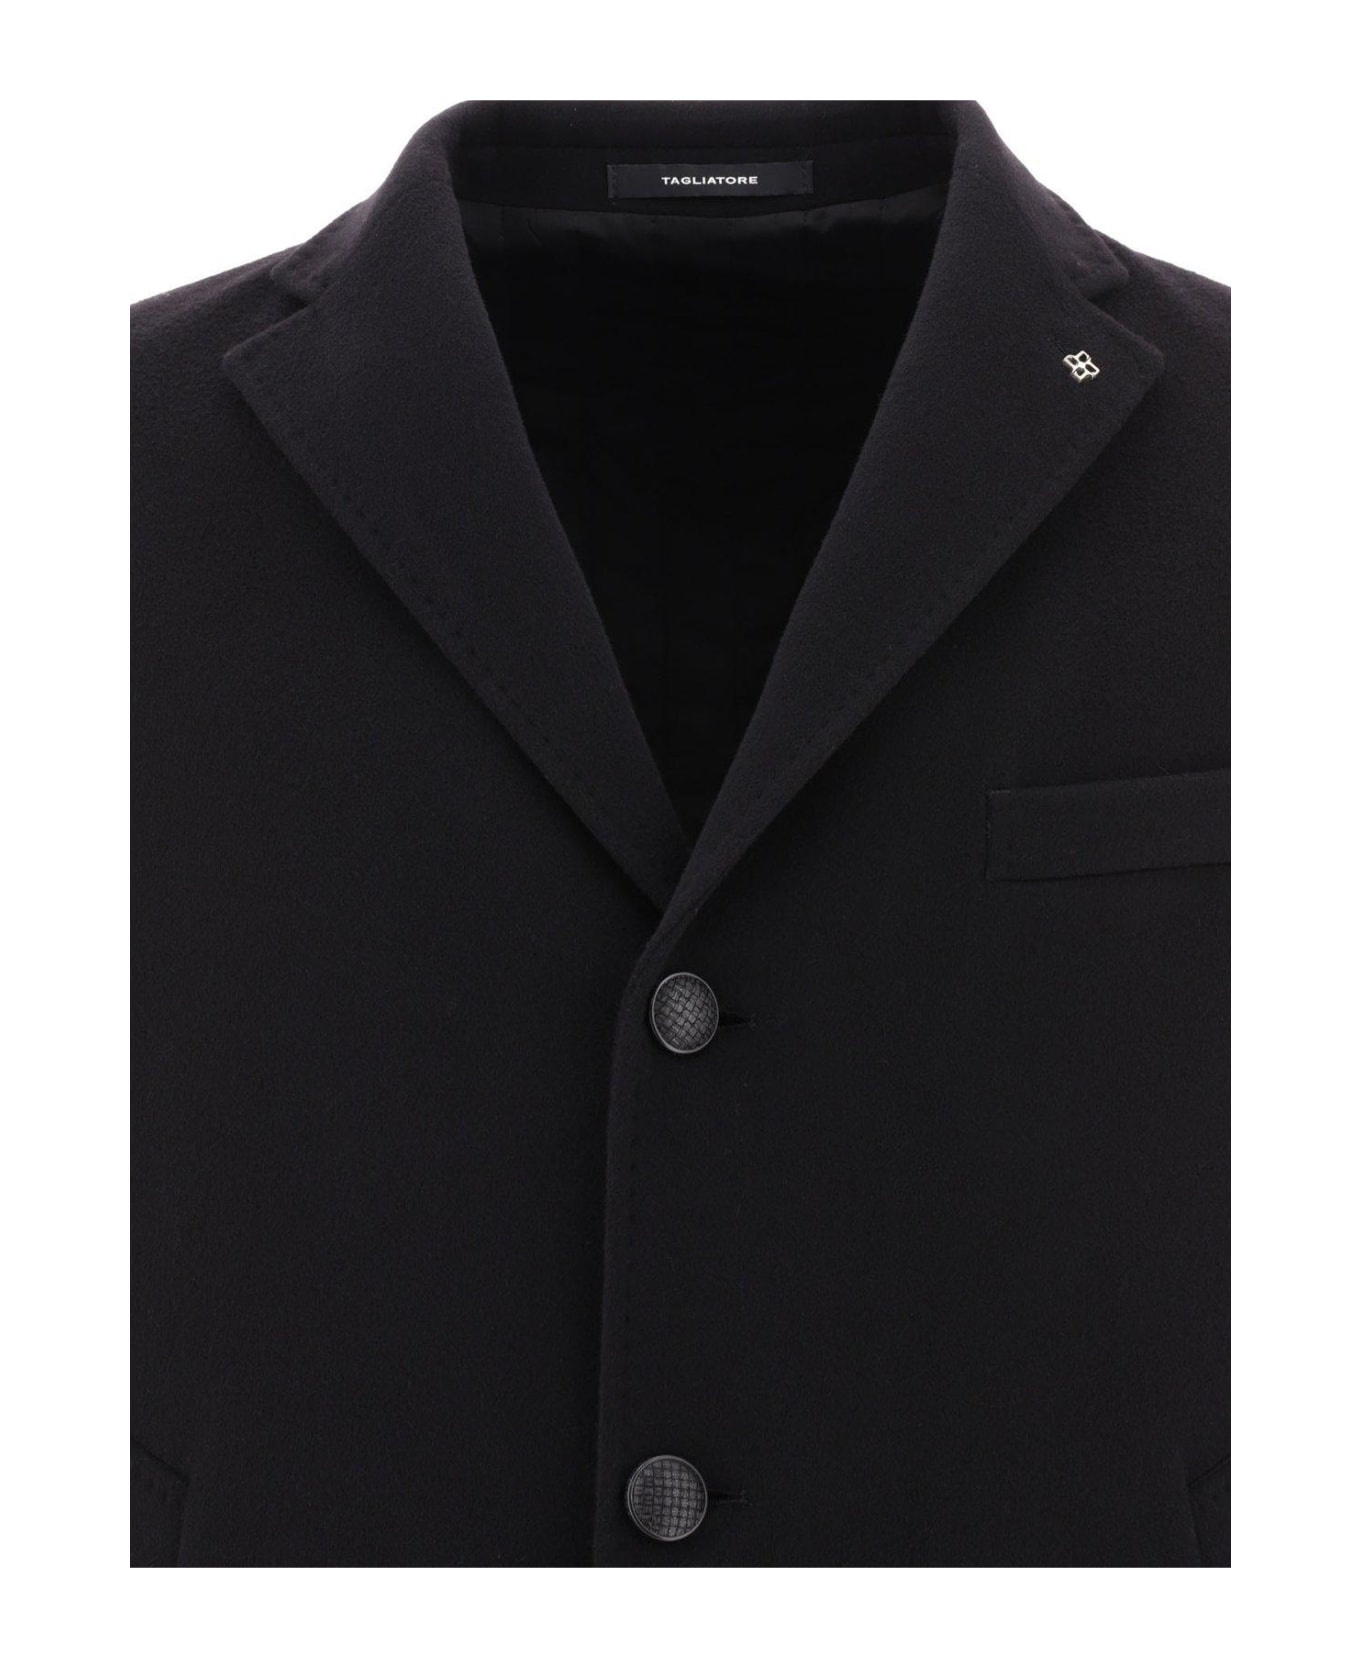 Tagliatore Single-breasted Tailored Blazer - Black コート